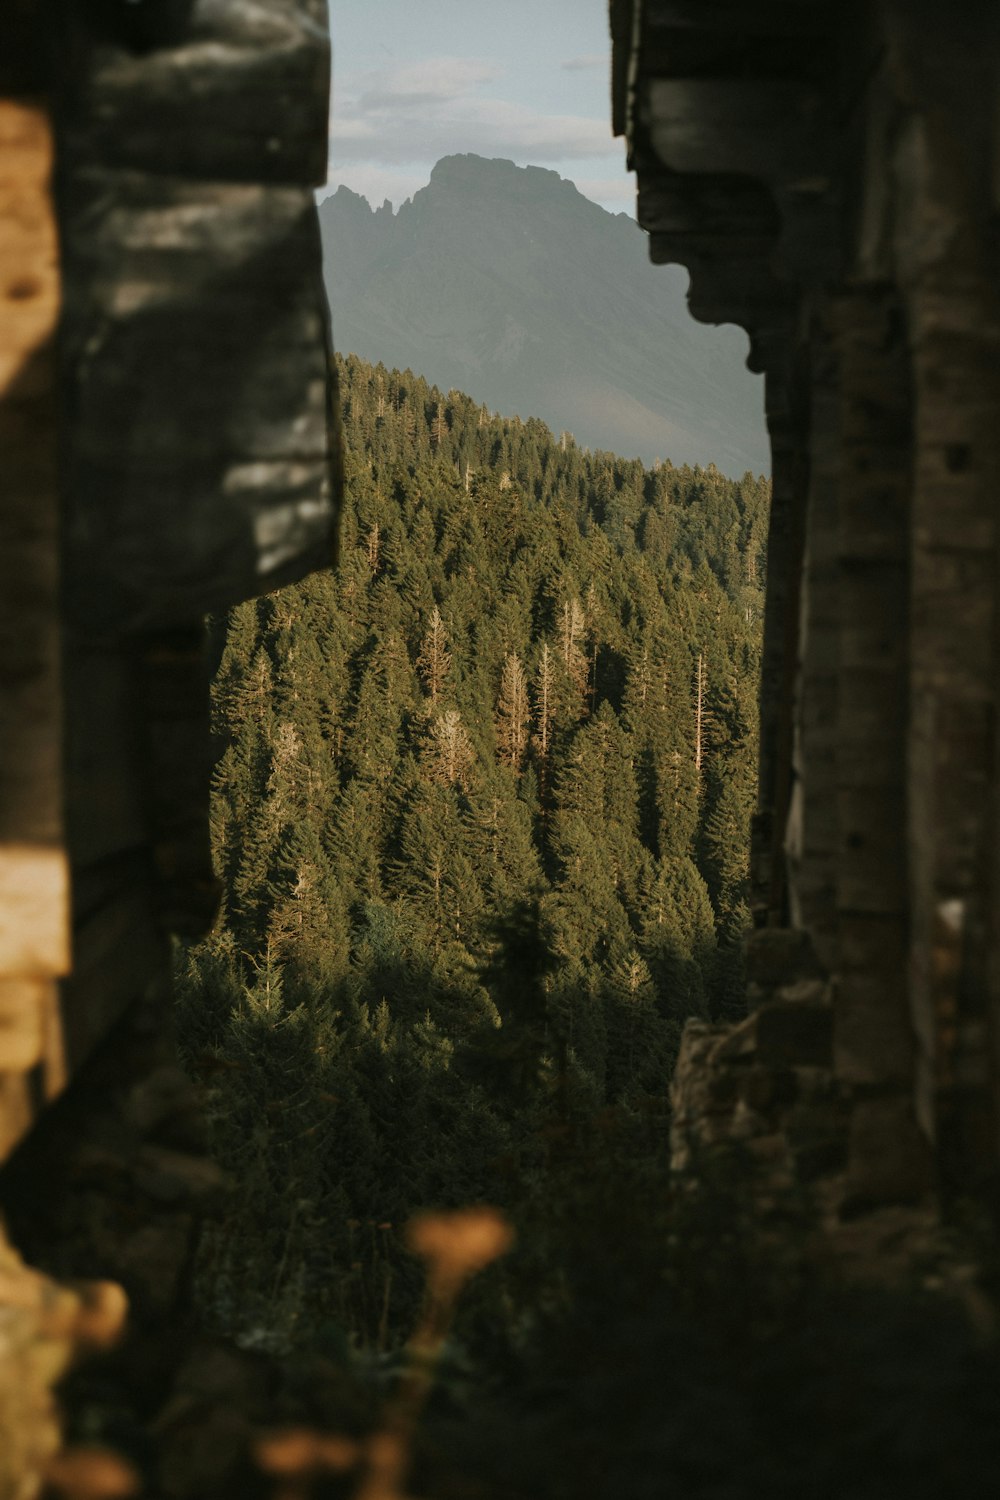 Una vista de un bosque a través de una ventana